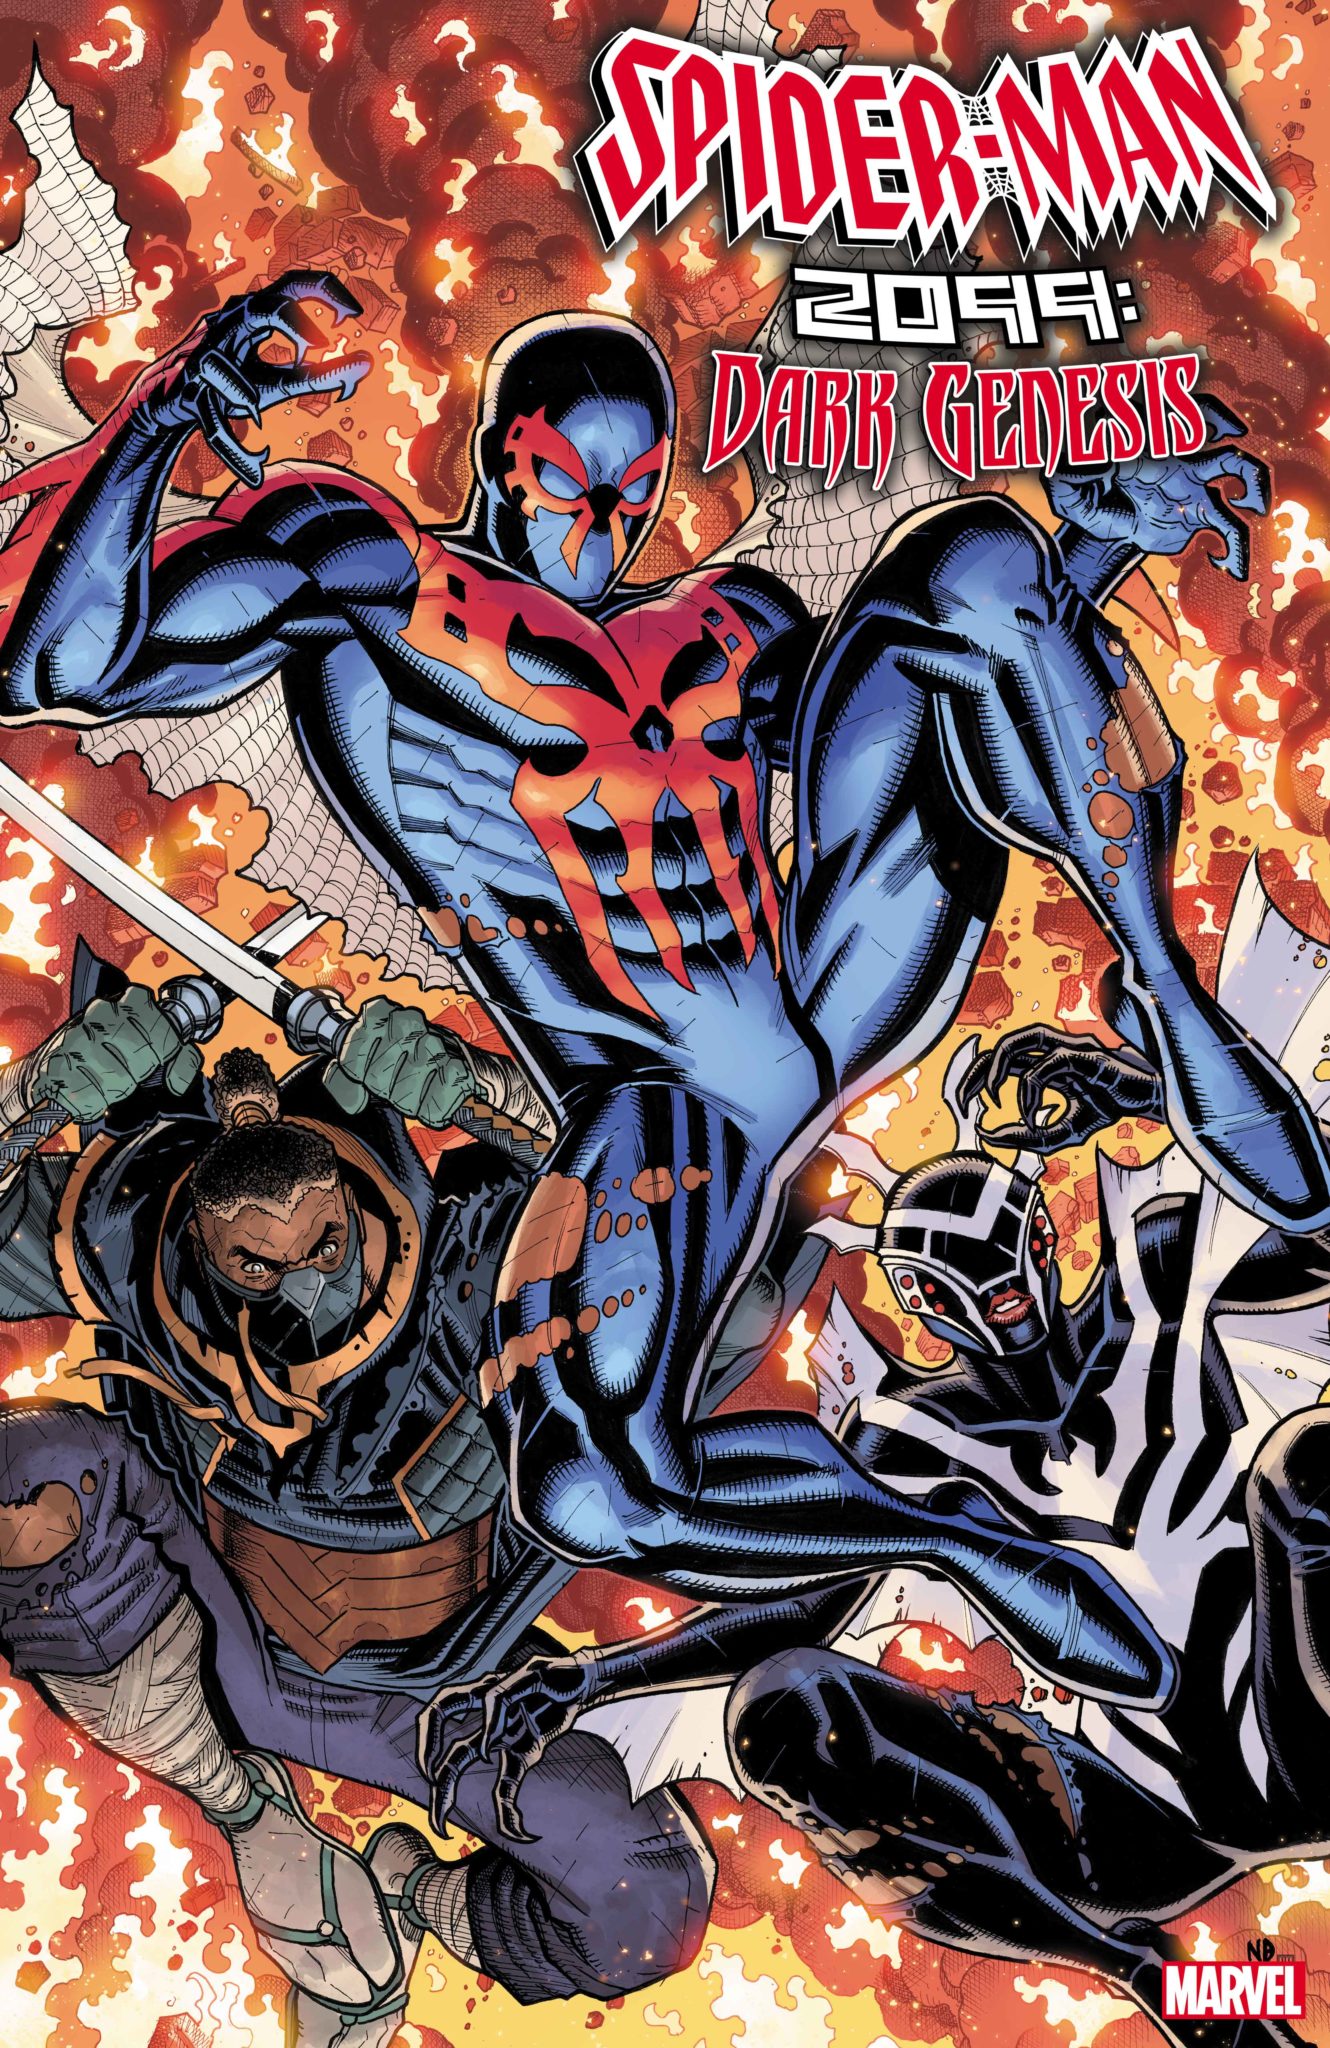 SPIDER-MAN 2099: DARK GENESIS #2 cover